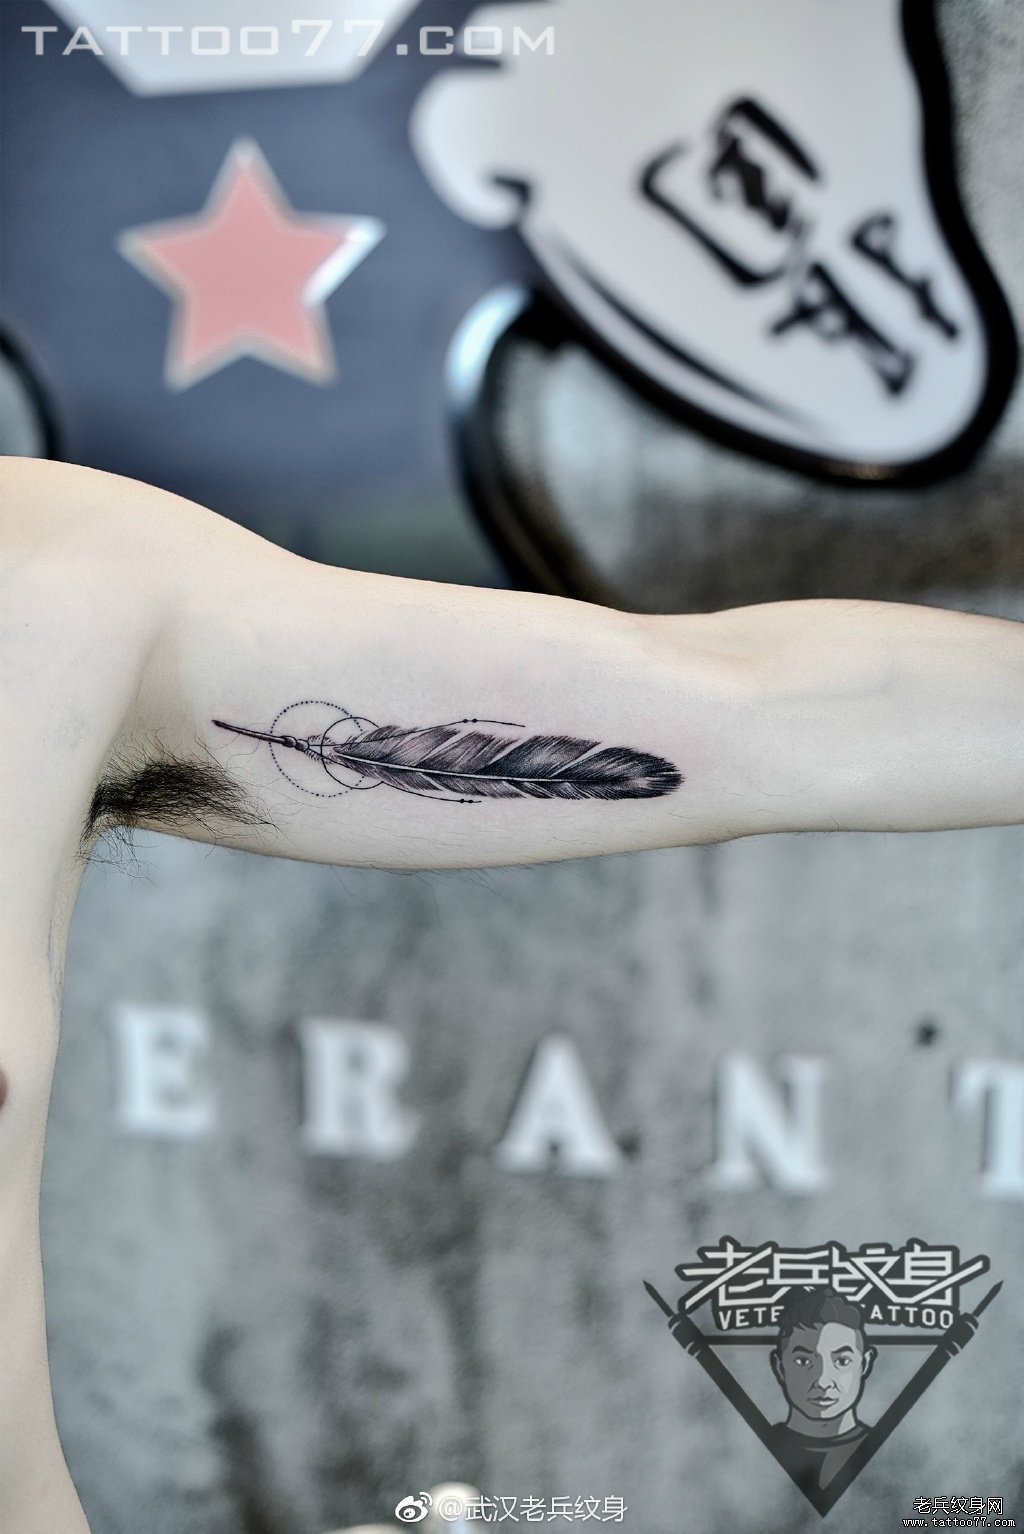 大臂内侧羽毛纹身图案作品由武汉纹身店打造